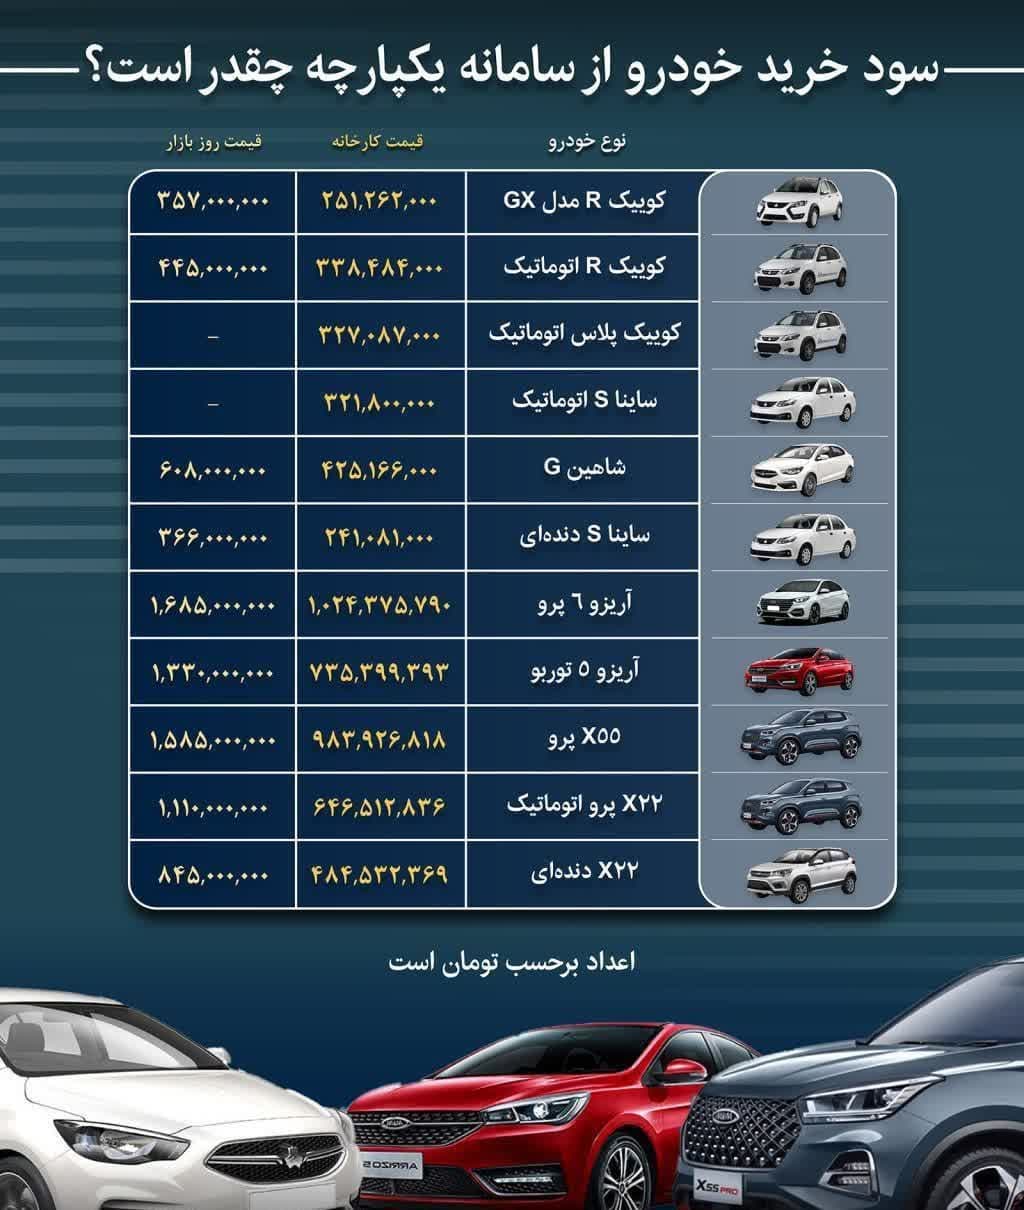 قیمت خودروهای عرضه شده در سامانه یکپارچه + شروع ثبت خرید خودرو از فردا + لیست خودروها